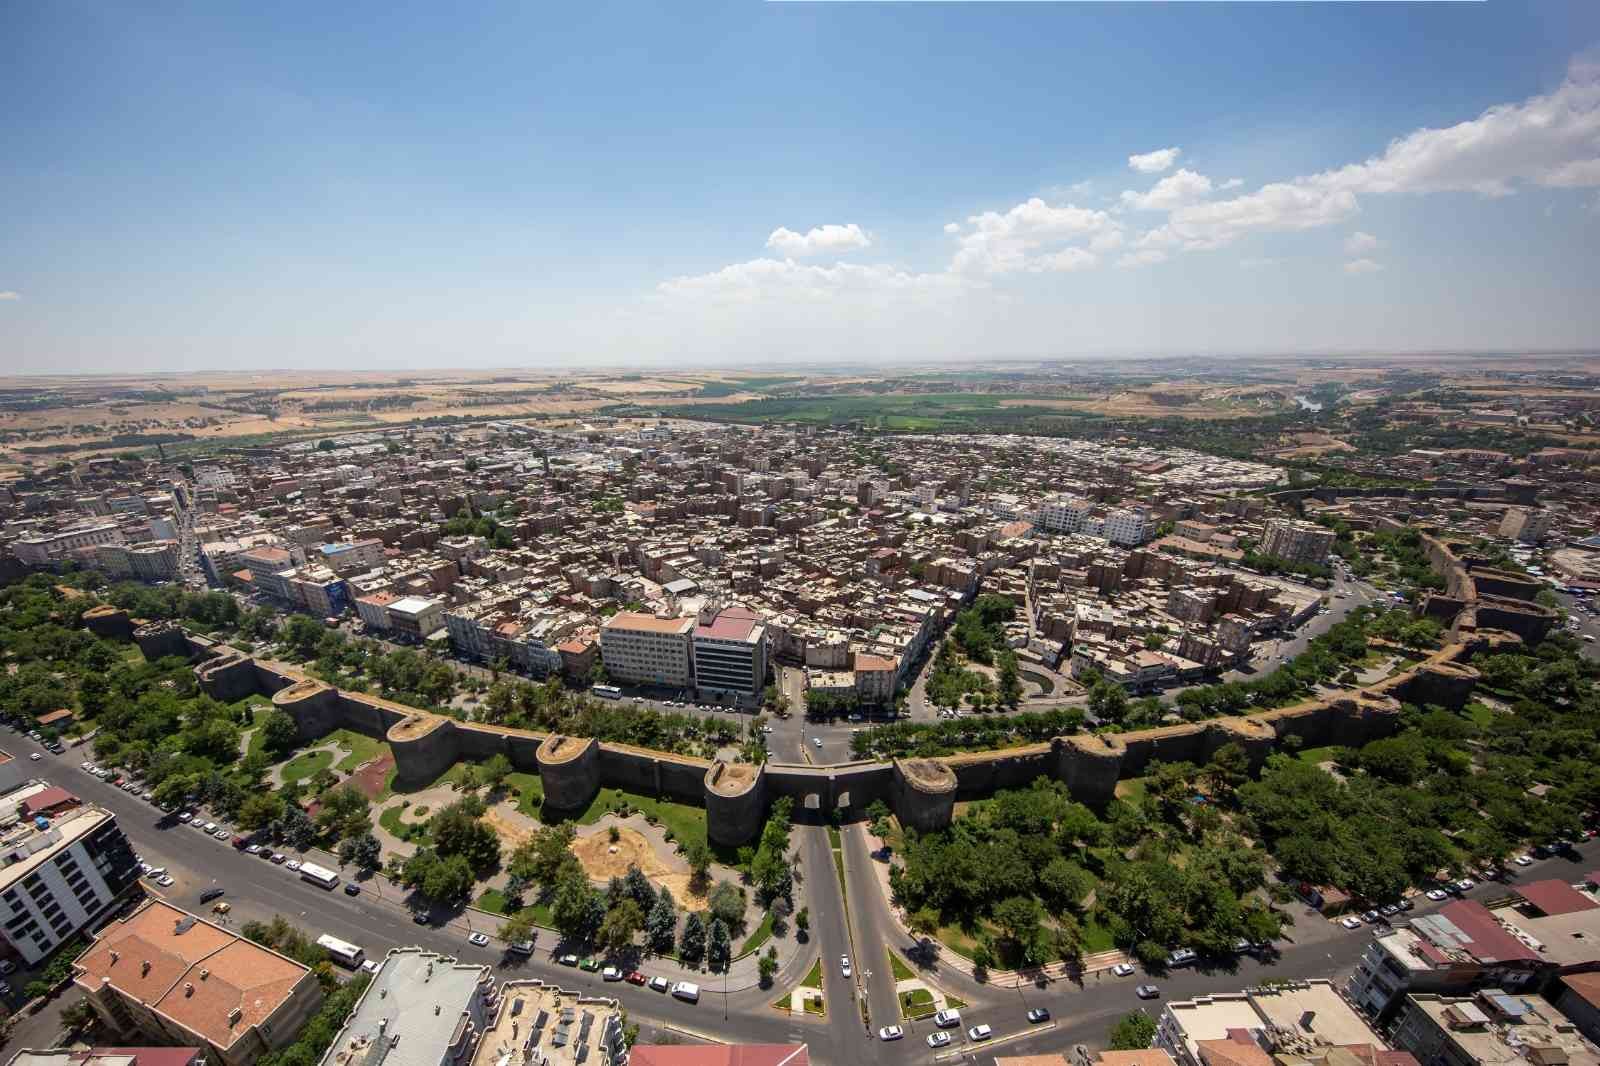 Diyarbakır’da 2023’e kadar hedef 5 milyon turist #diyarbakir